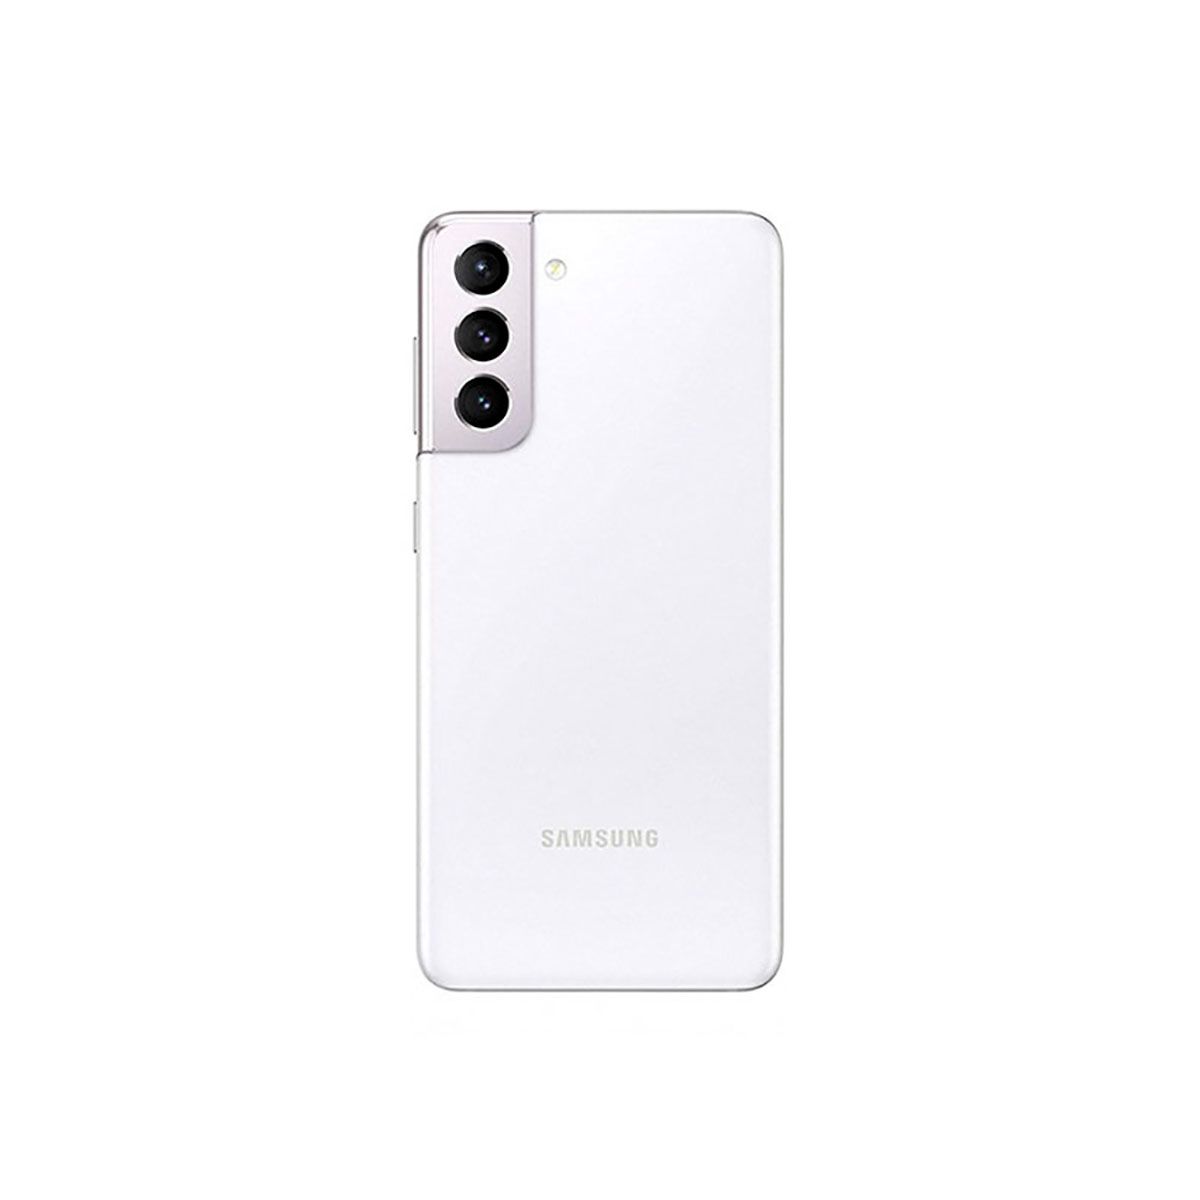 Samsung Galaxy S21 5G 8 Go/128 Go Blanc (Blanc fantôme) Double SIM G991